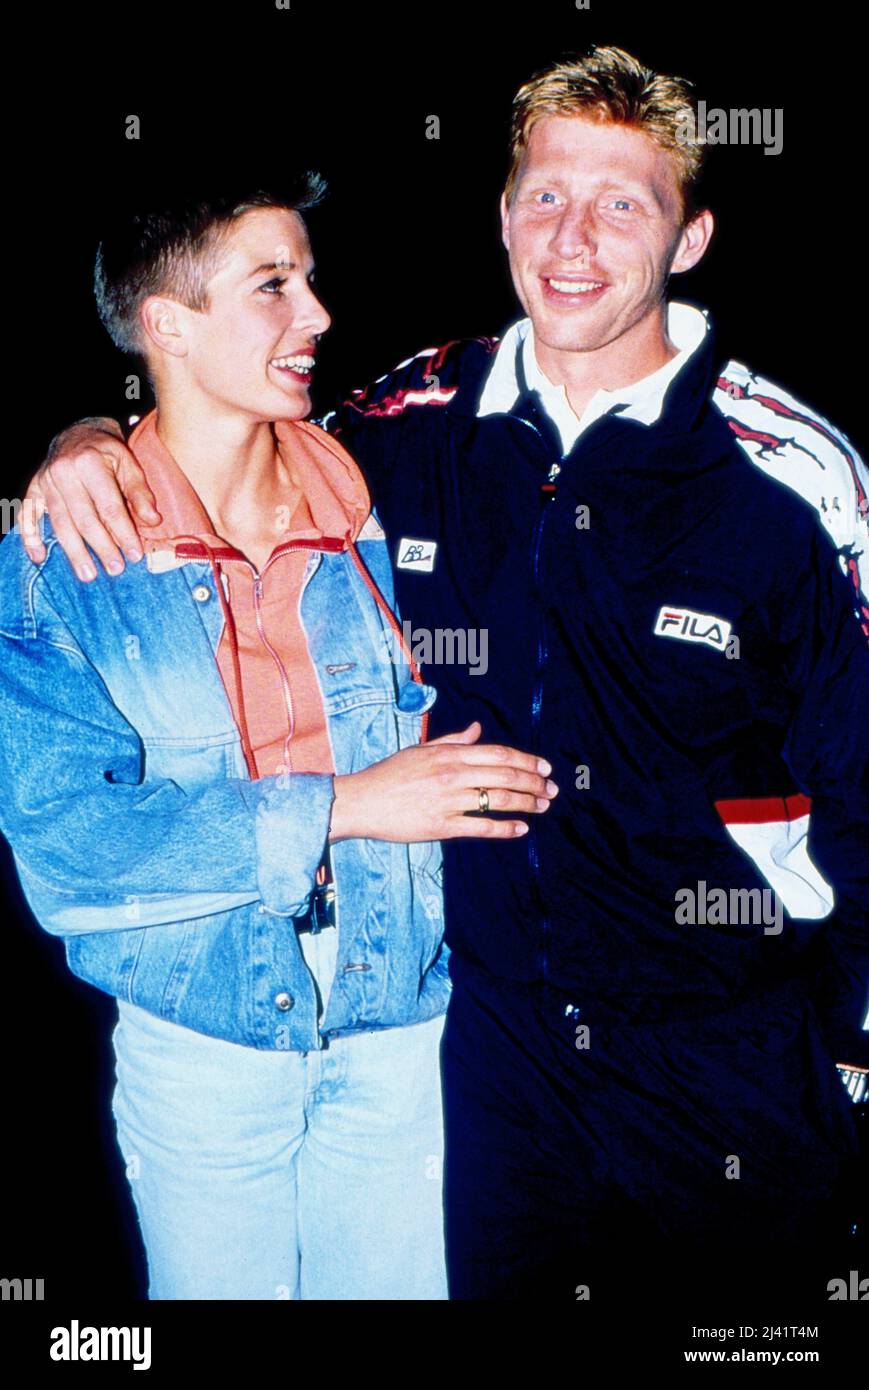 Boris Becker, deutscher Tennisspieler, mit Freundin Karen Schultz, Deutschland um 1989. Foto Stock